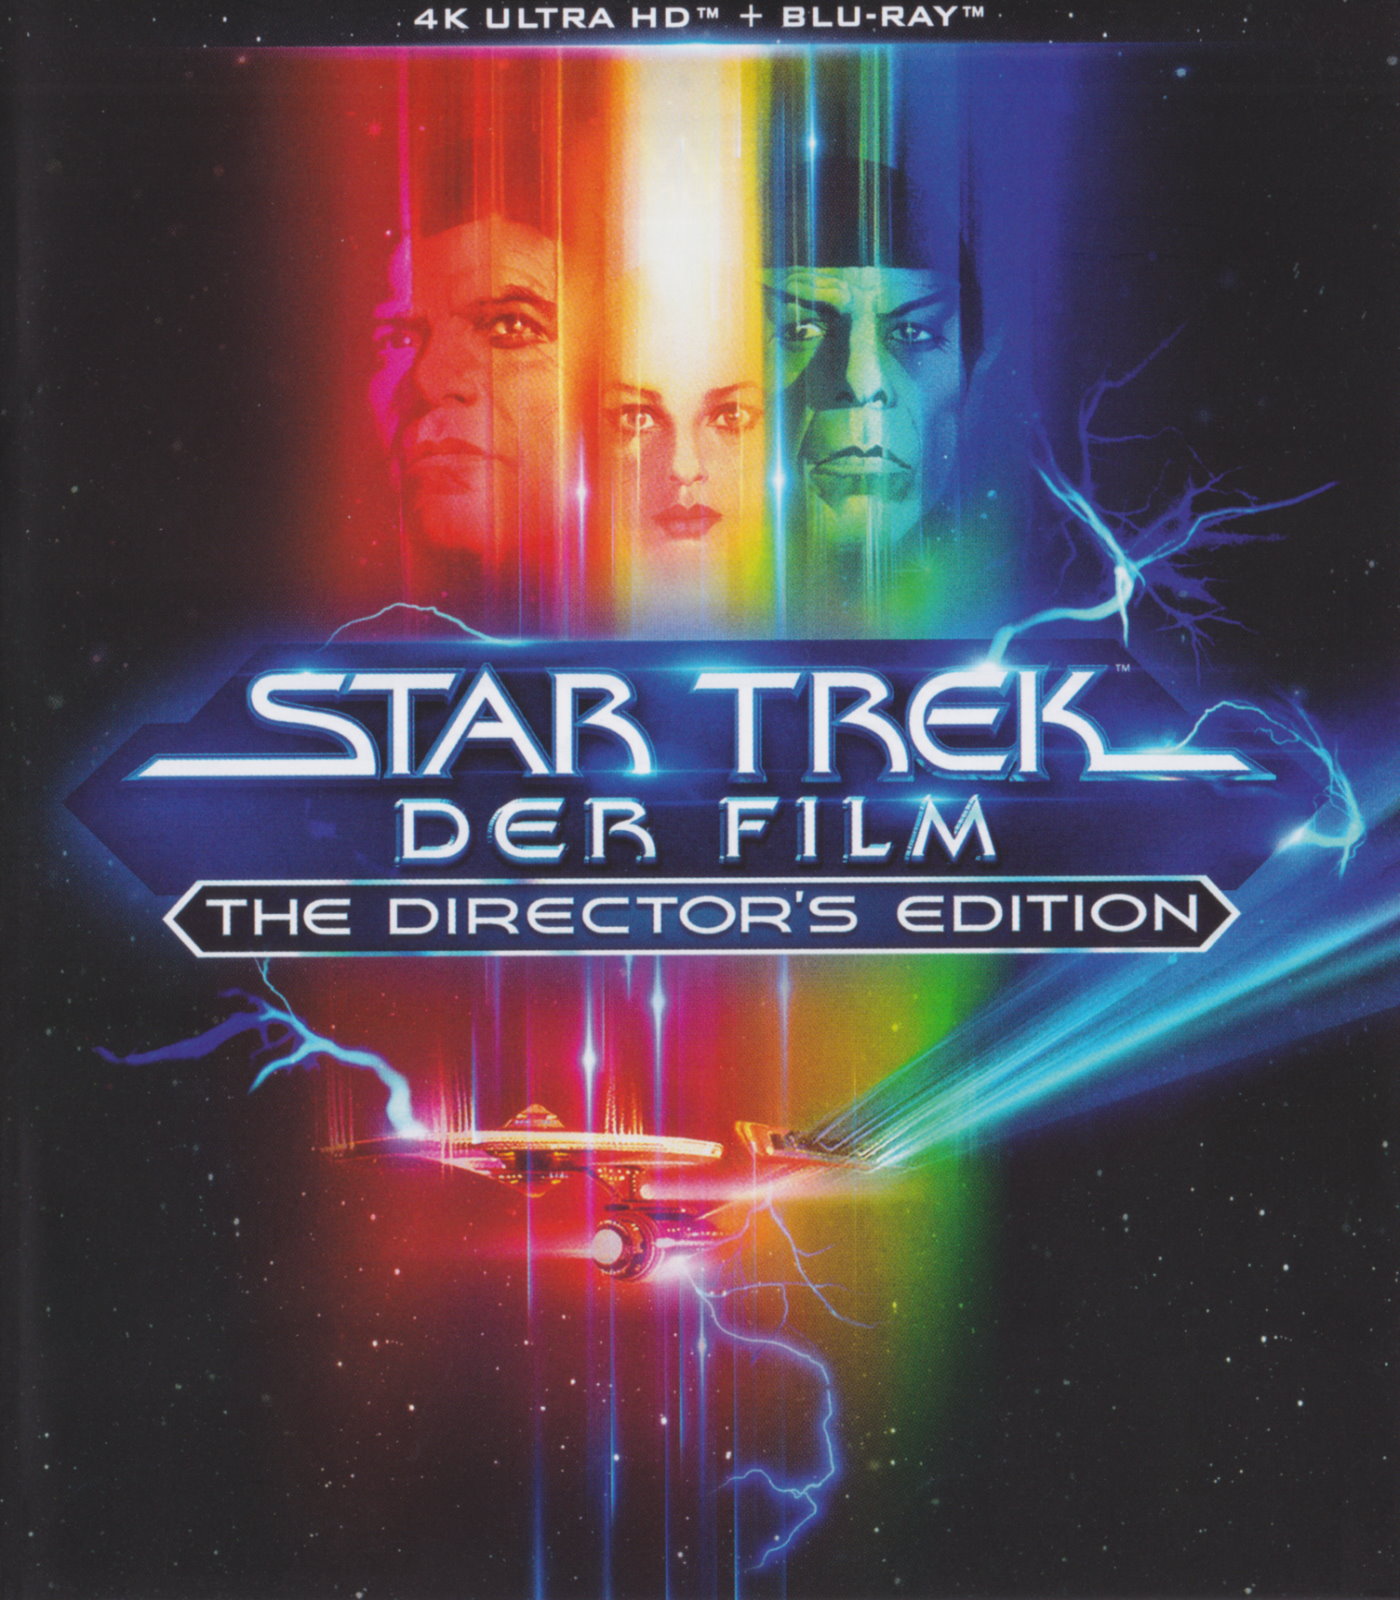 Cover - Star Trek - Der Film.jpg